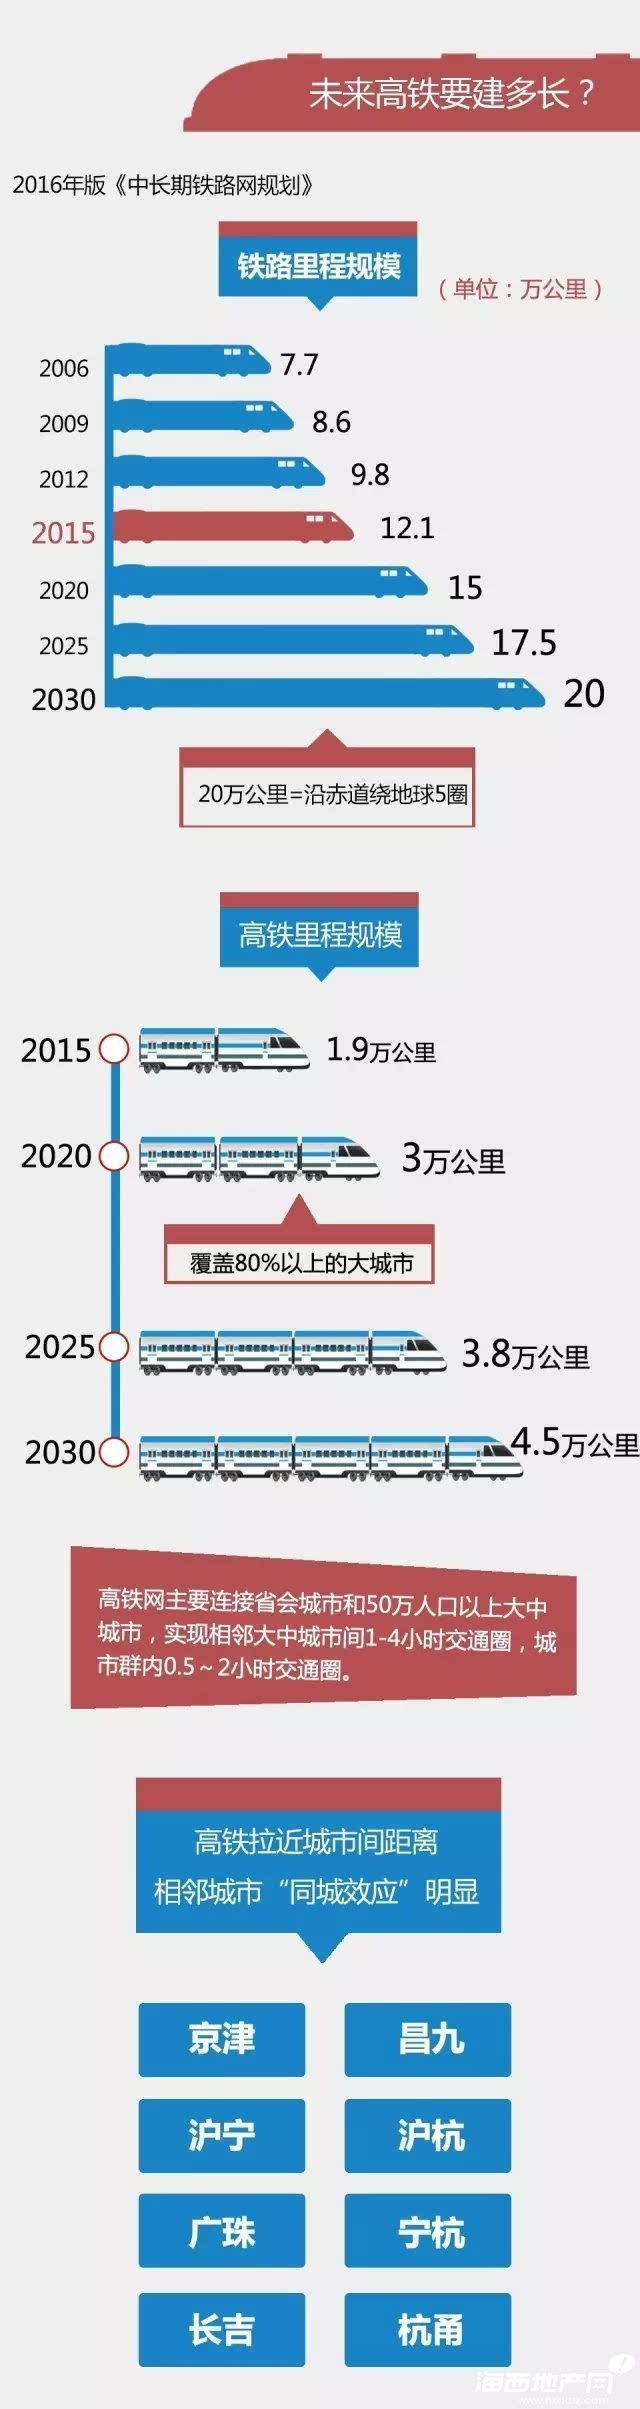 各方18个中国铁路英才网,中国铁路天津铁路官网,中国铁路英才网路局重组年内有望启动仍在博弈重组方案